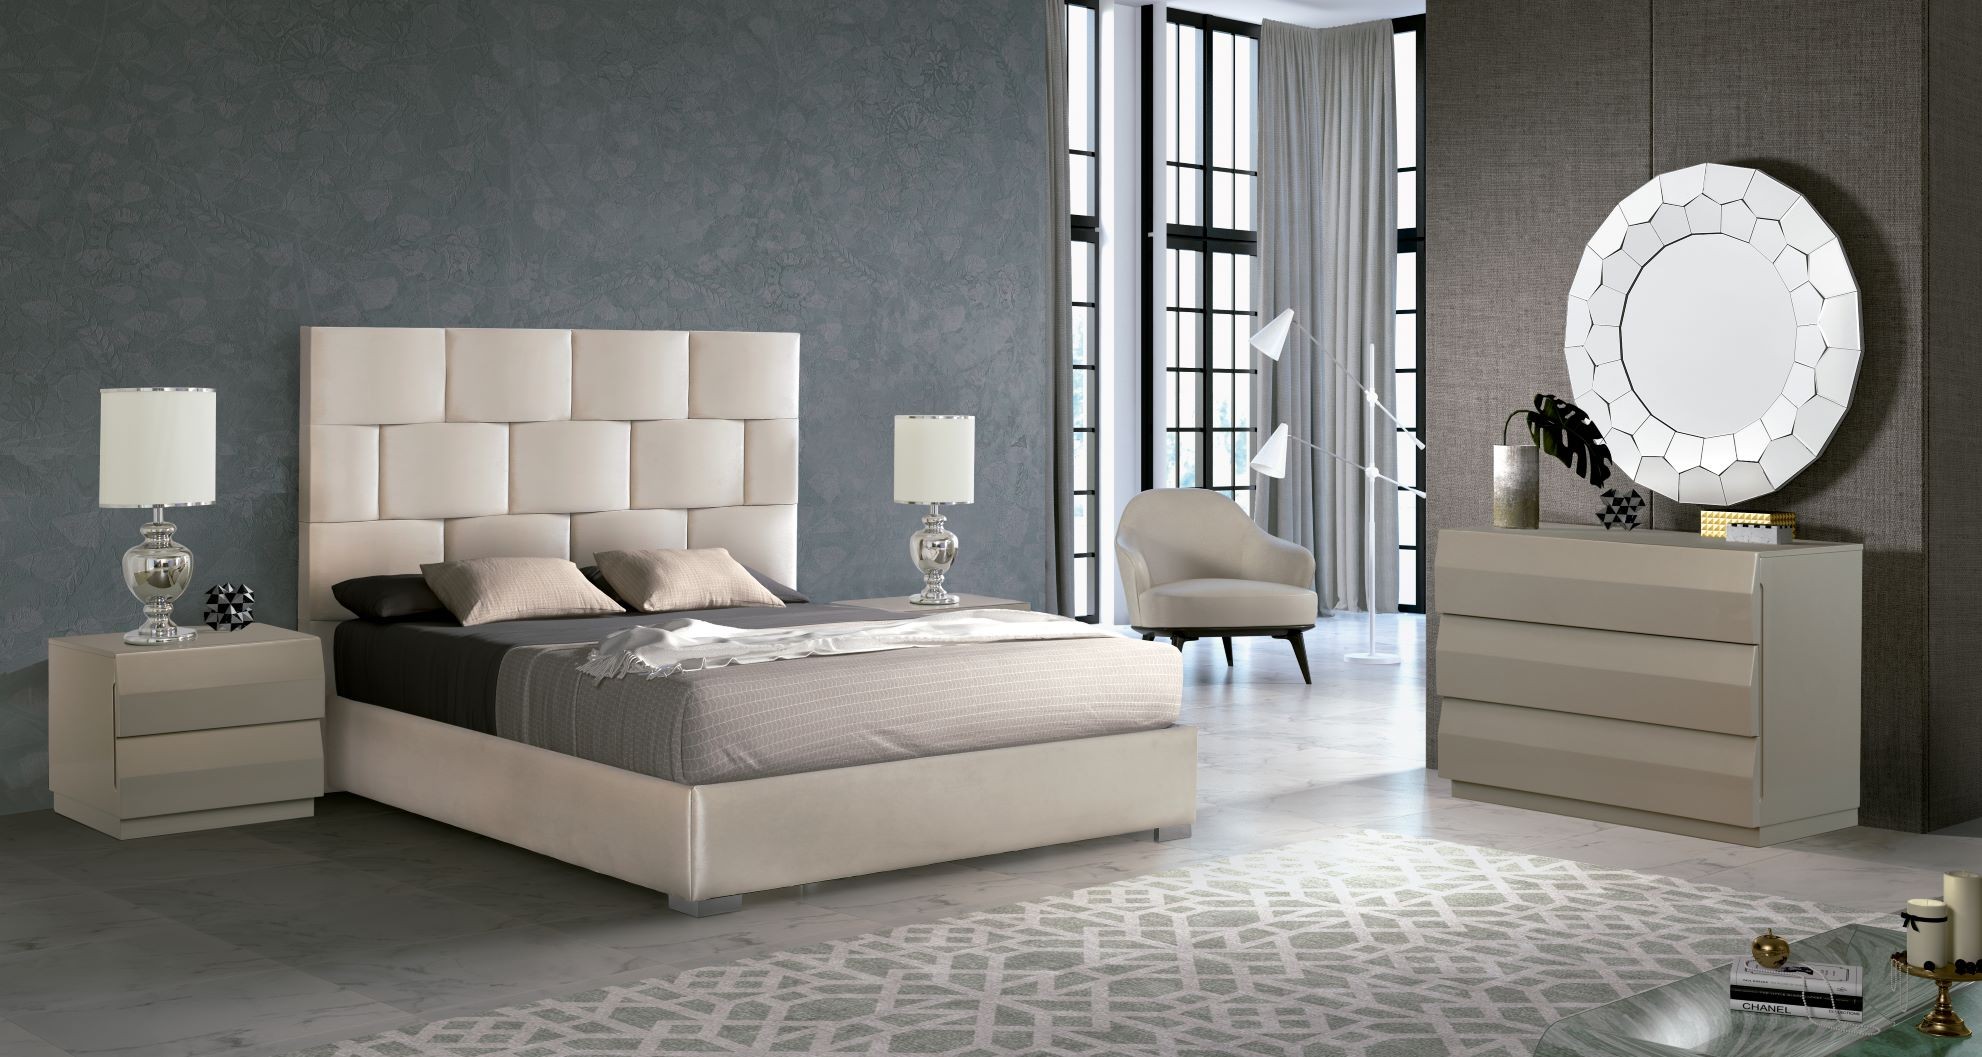 Estila Moderní luxusní manželská postel Berlin s čalouněním s geometrickým vzorem v čele bílé barvy 150-180